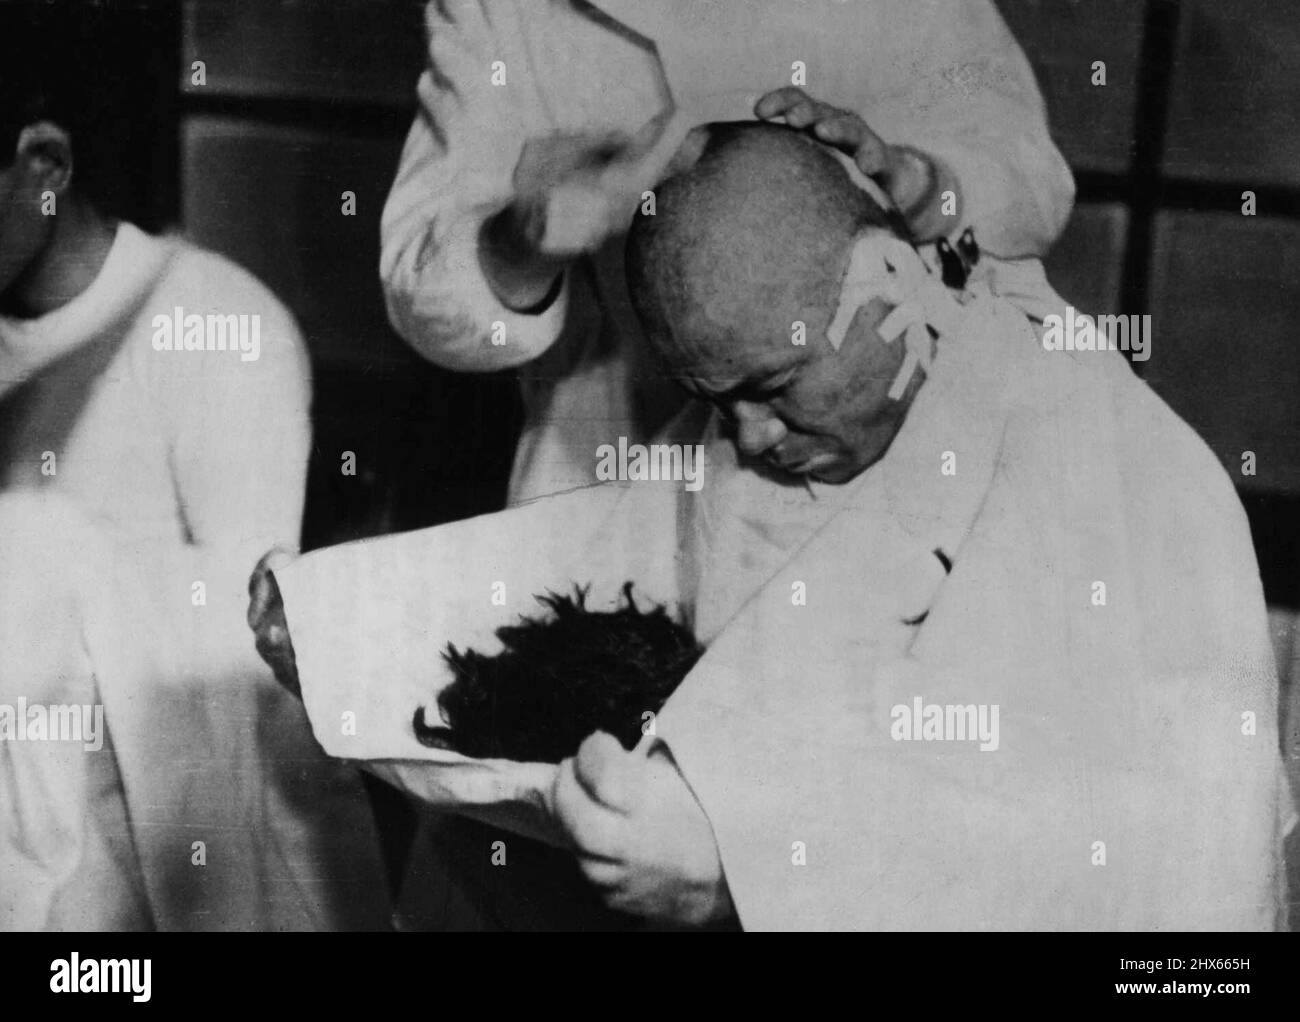 Jap vittime della bomba a idrogeno 'May Still Die' -- uno dei pescatori giapponesi ha i suoi capelli rasati via per ricevere assistenza medica dopo la sua esposizione a radioattivo. I pescatori giapponesi bruciati dalla cenere radioattiva che ha fatto la doccia sulla loro barca dopo il test americano della bomba a idrogeno a Bikini il 1 marzo sono "vivere sulle trasfusioni di sangue" e possono ancora morire, secondo il Dr. Shigevoshi Matsumaye, Un investigatore giapponese. Marzo 26, 1954. (Foto di Paul Popper Ltd.). Foto Stock